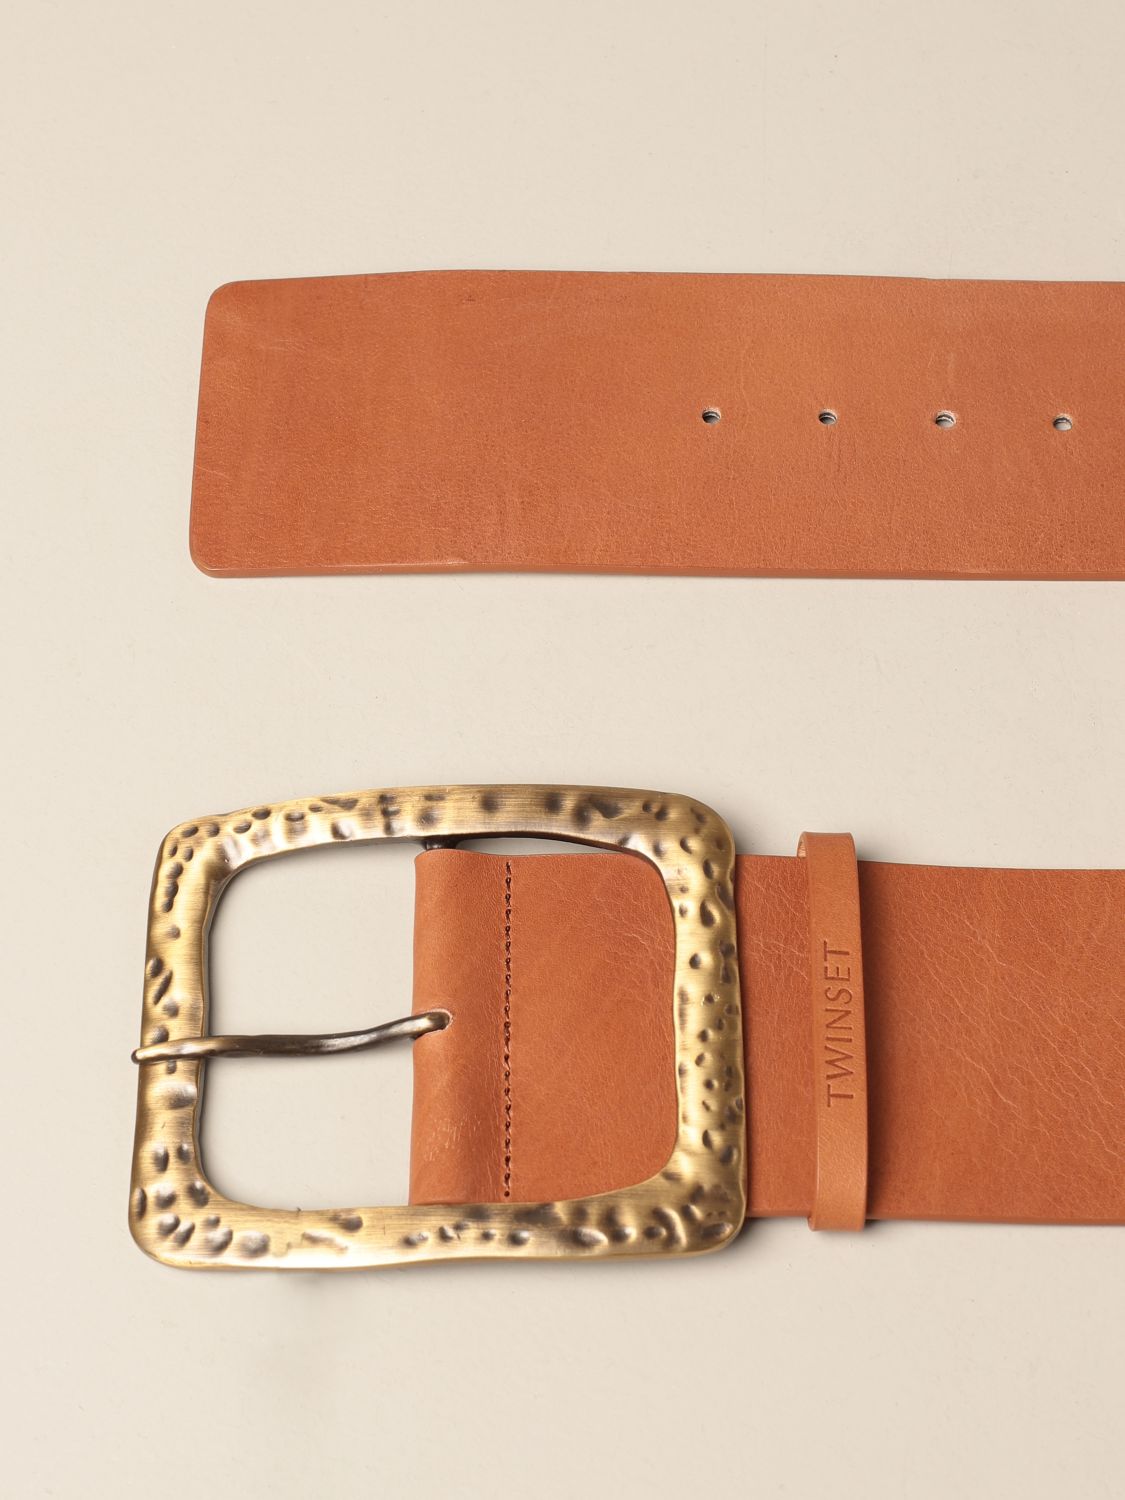 TWIN SET: Twin-set leather belt | Belt Twin Set Women Leather | Belt ...